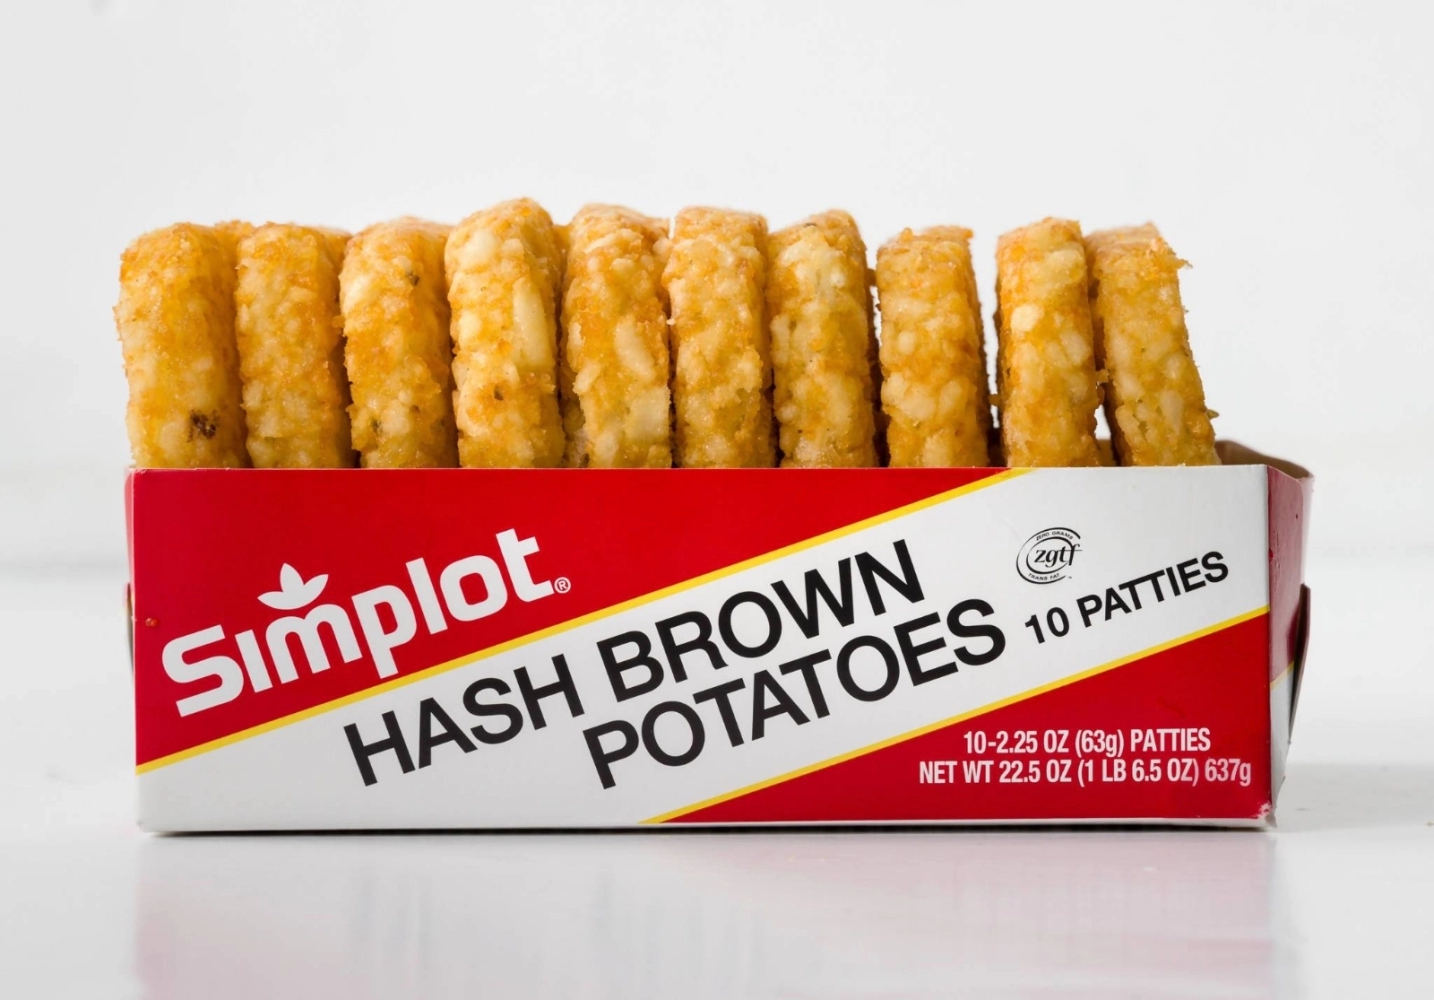 Simplot Hash Brown Potatoes 10's